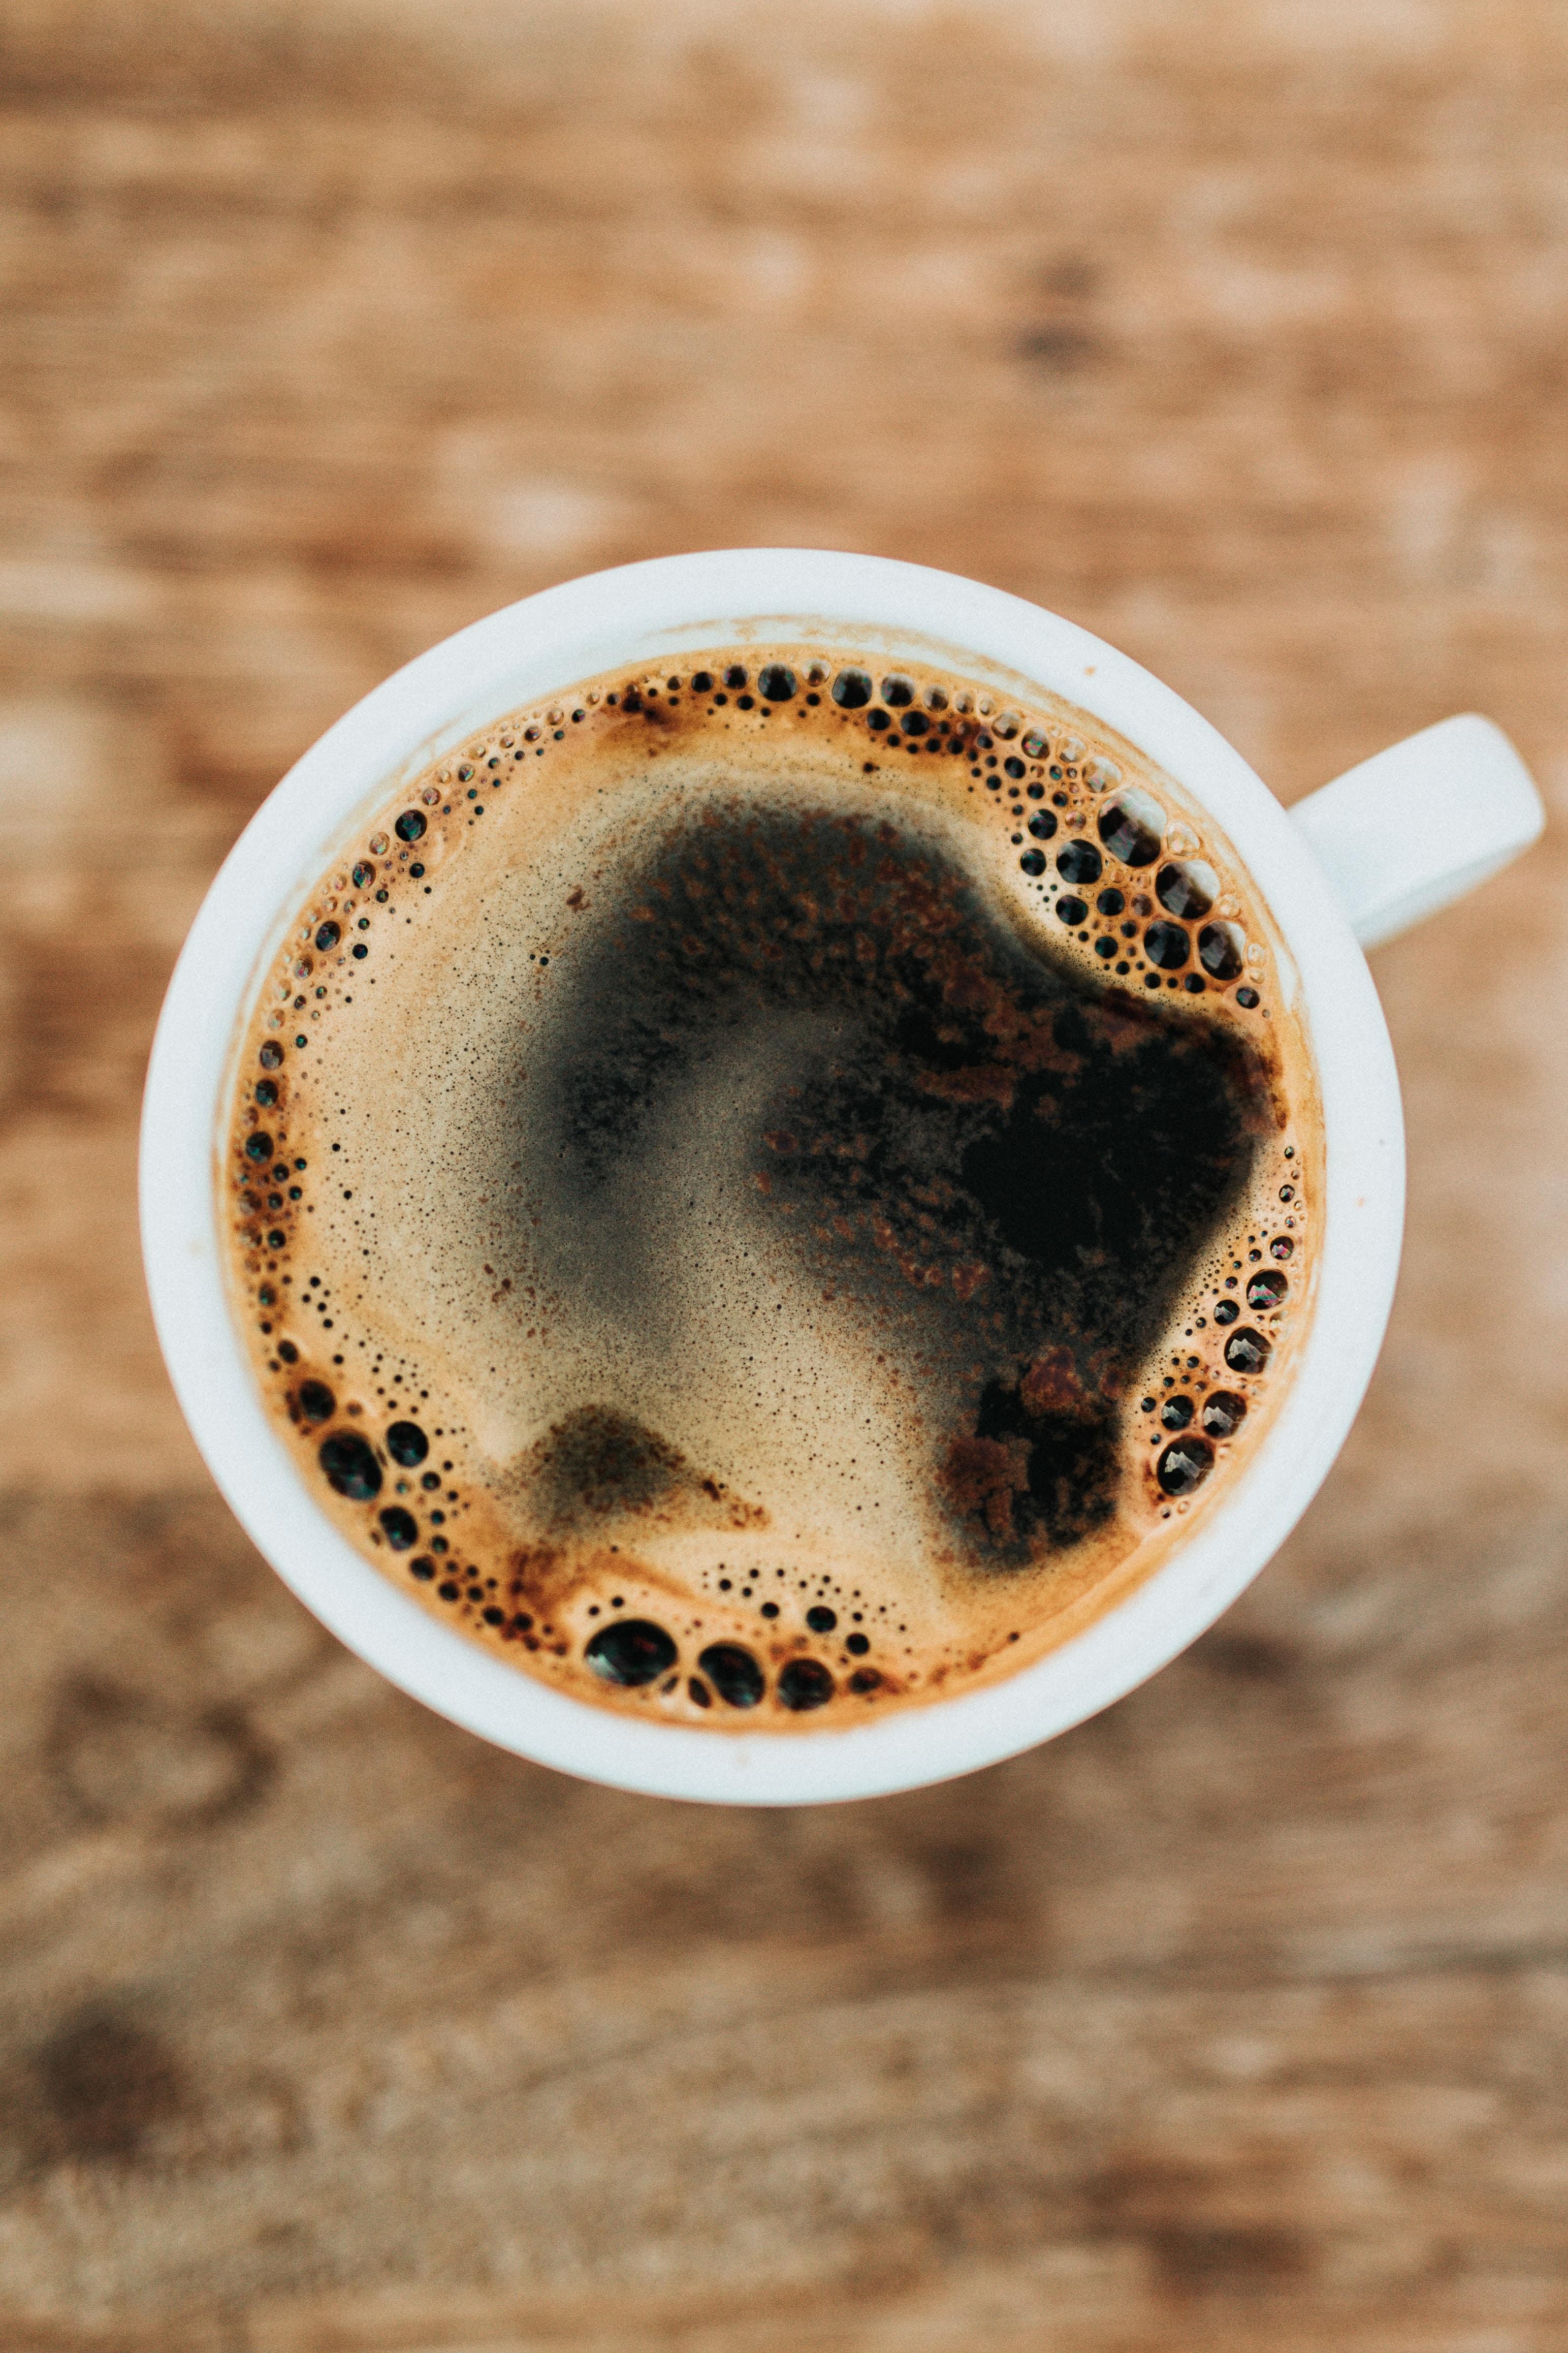 Ile kofeiny ma kawa? Jak jej ilość wpływa na organizm? Jaka kofeina jest w kawie? Wpływ kofeiny na organizm? Jak działa kofeina? Od czego zależy jej działanie?